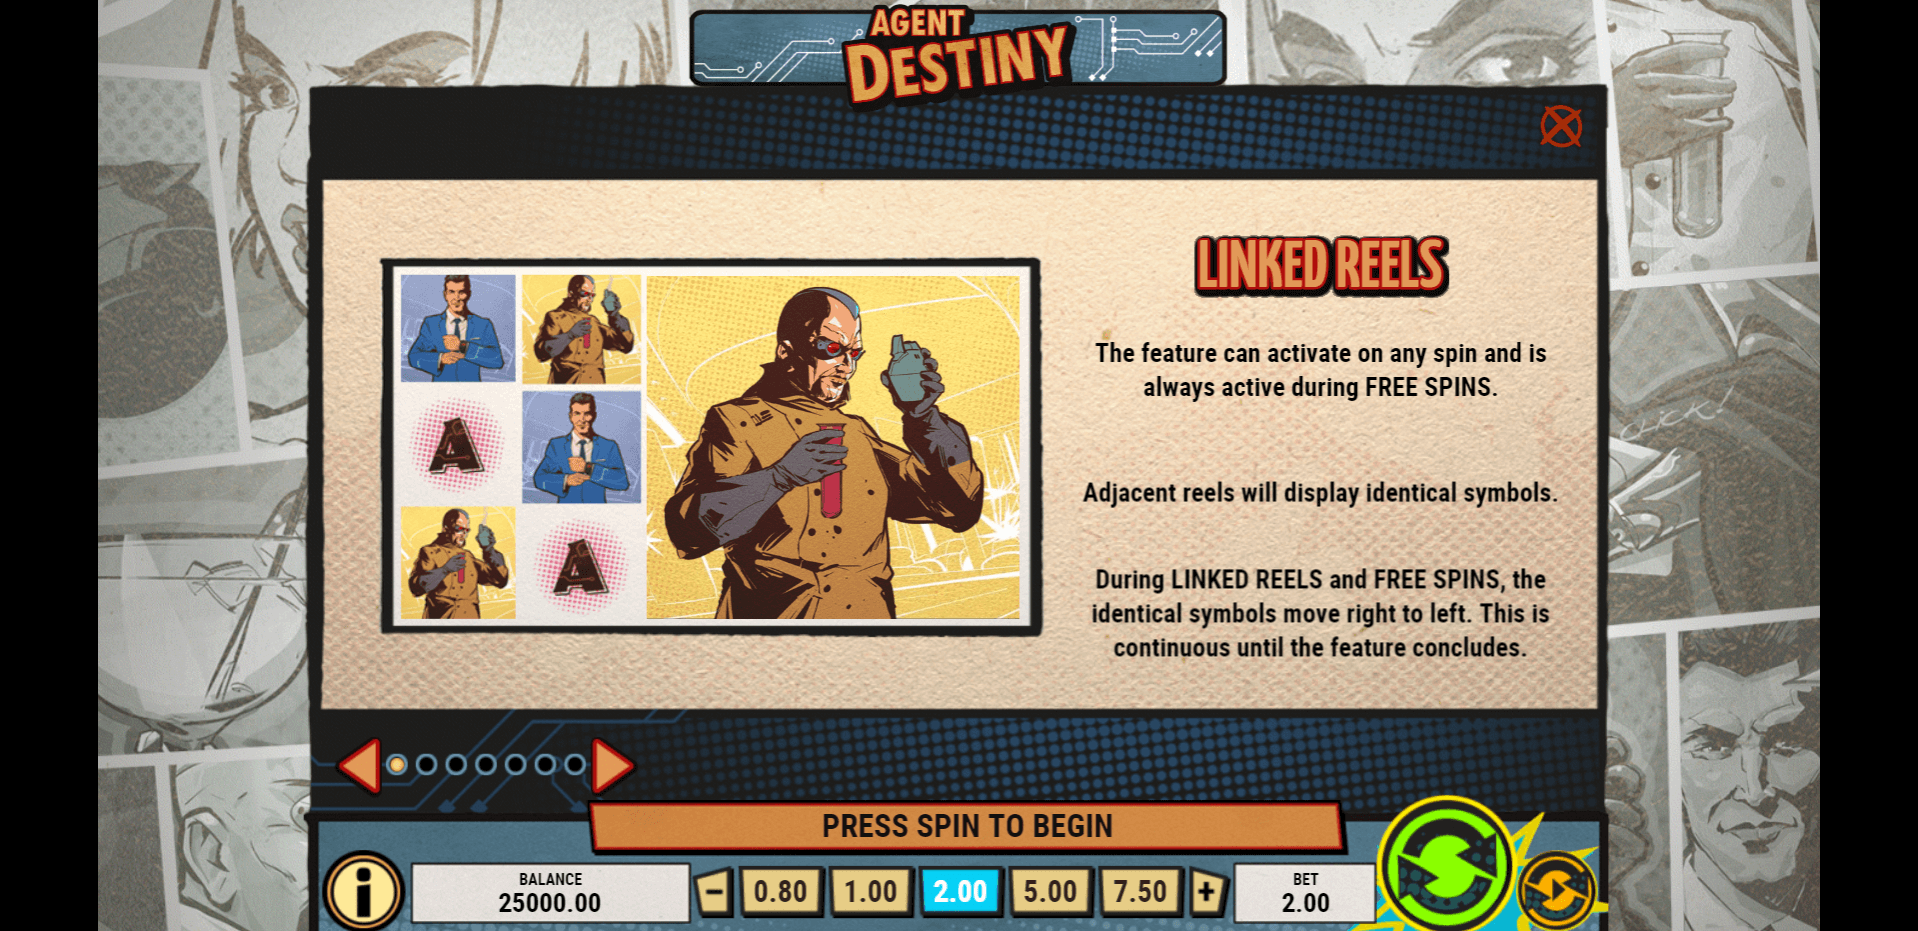 agent destiny slot machine detail image 0